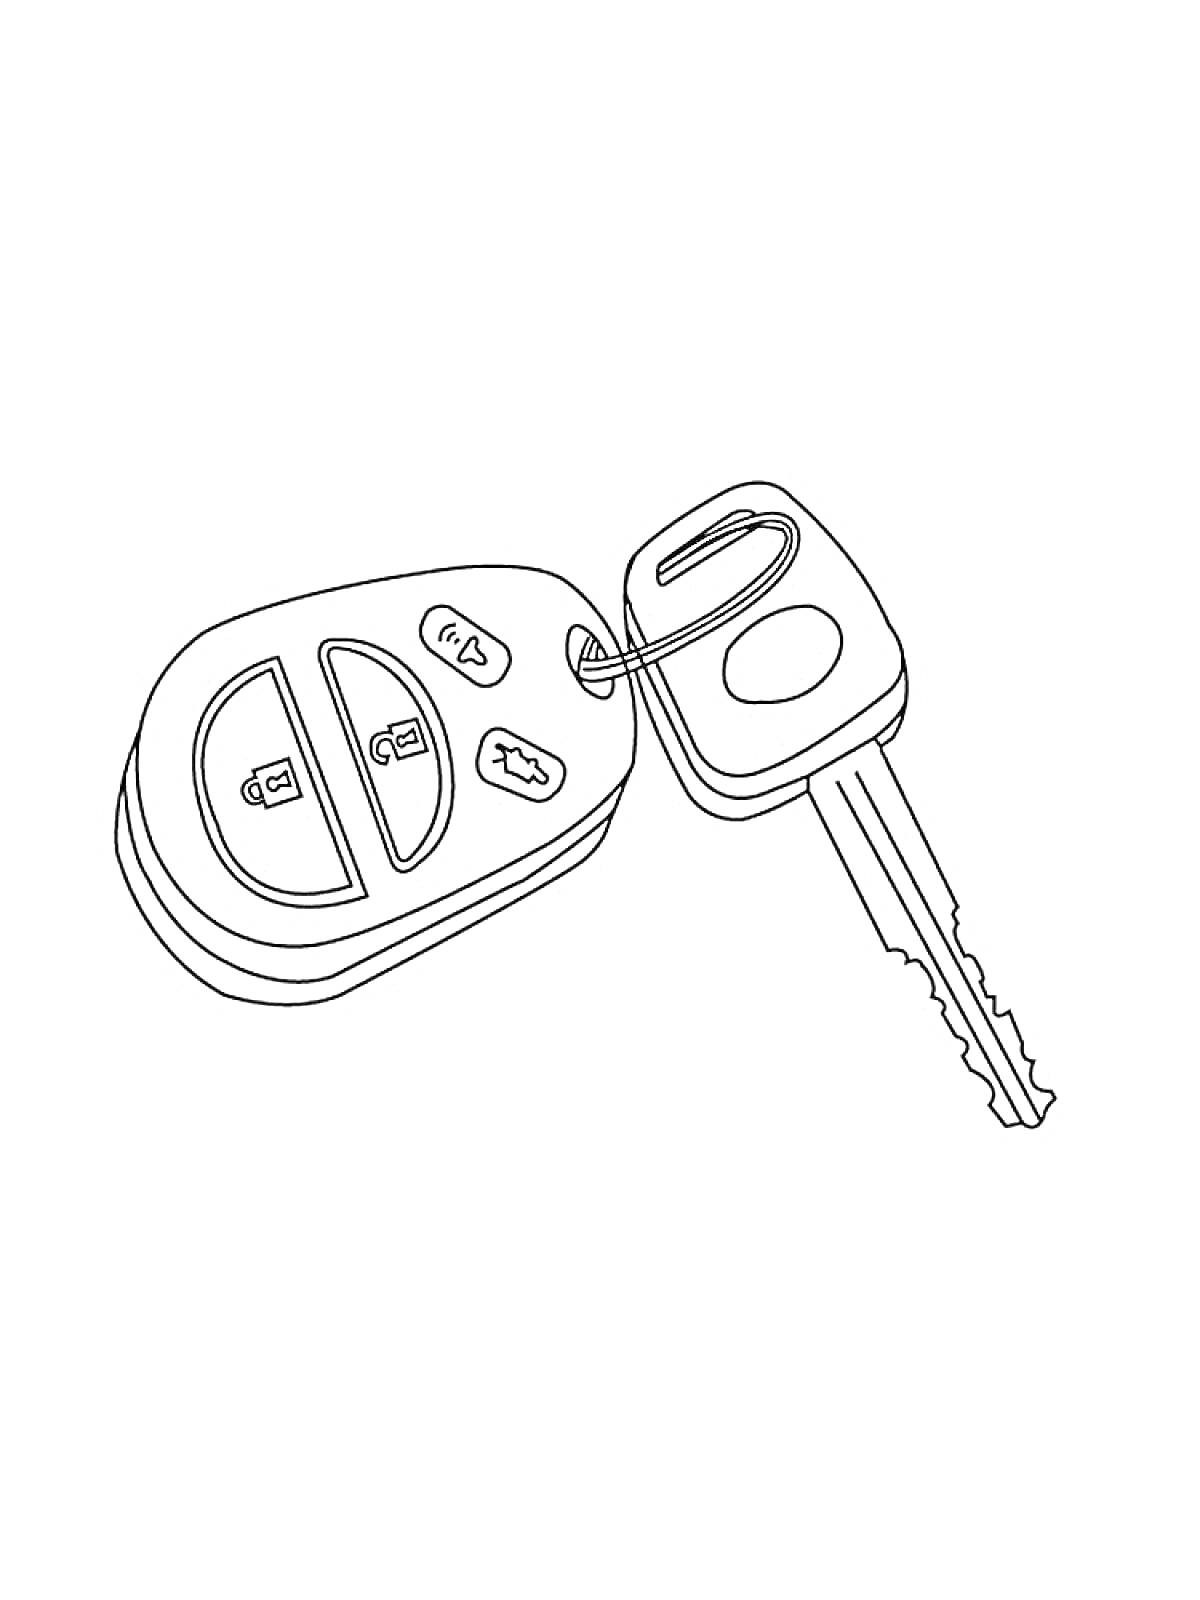 Раскраска Автомобильный ключ с брелоком, включающий кнопки блокировки и разблокировки дверей